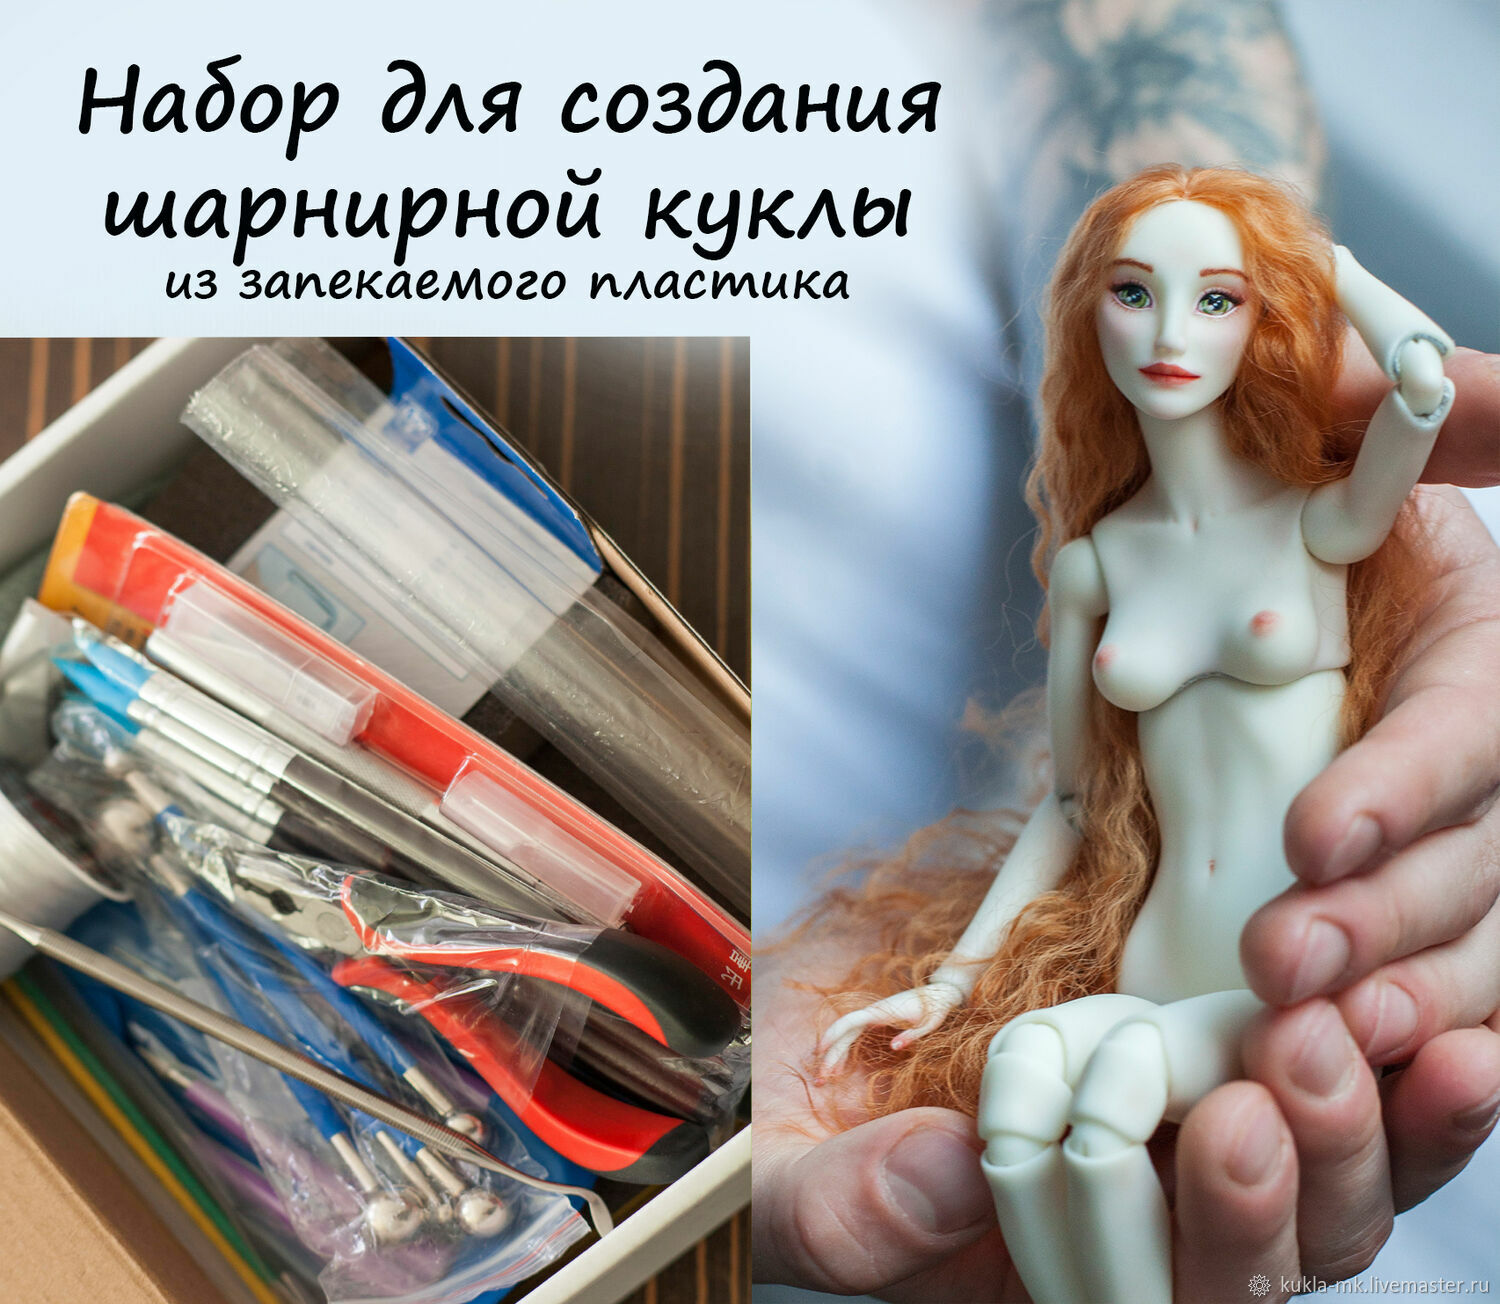 Набор для создания куклы. bjd, Материалы для кукол и игрушек, Санкт-Петербург,  Фото №1